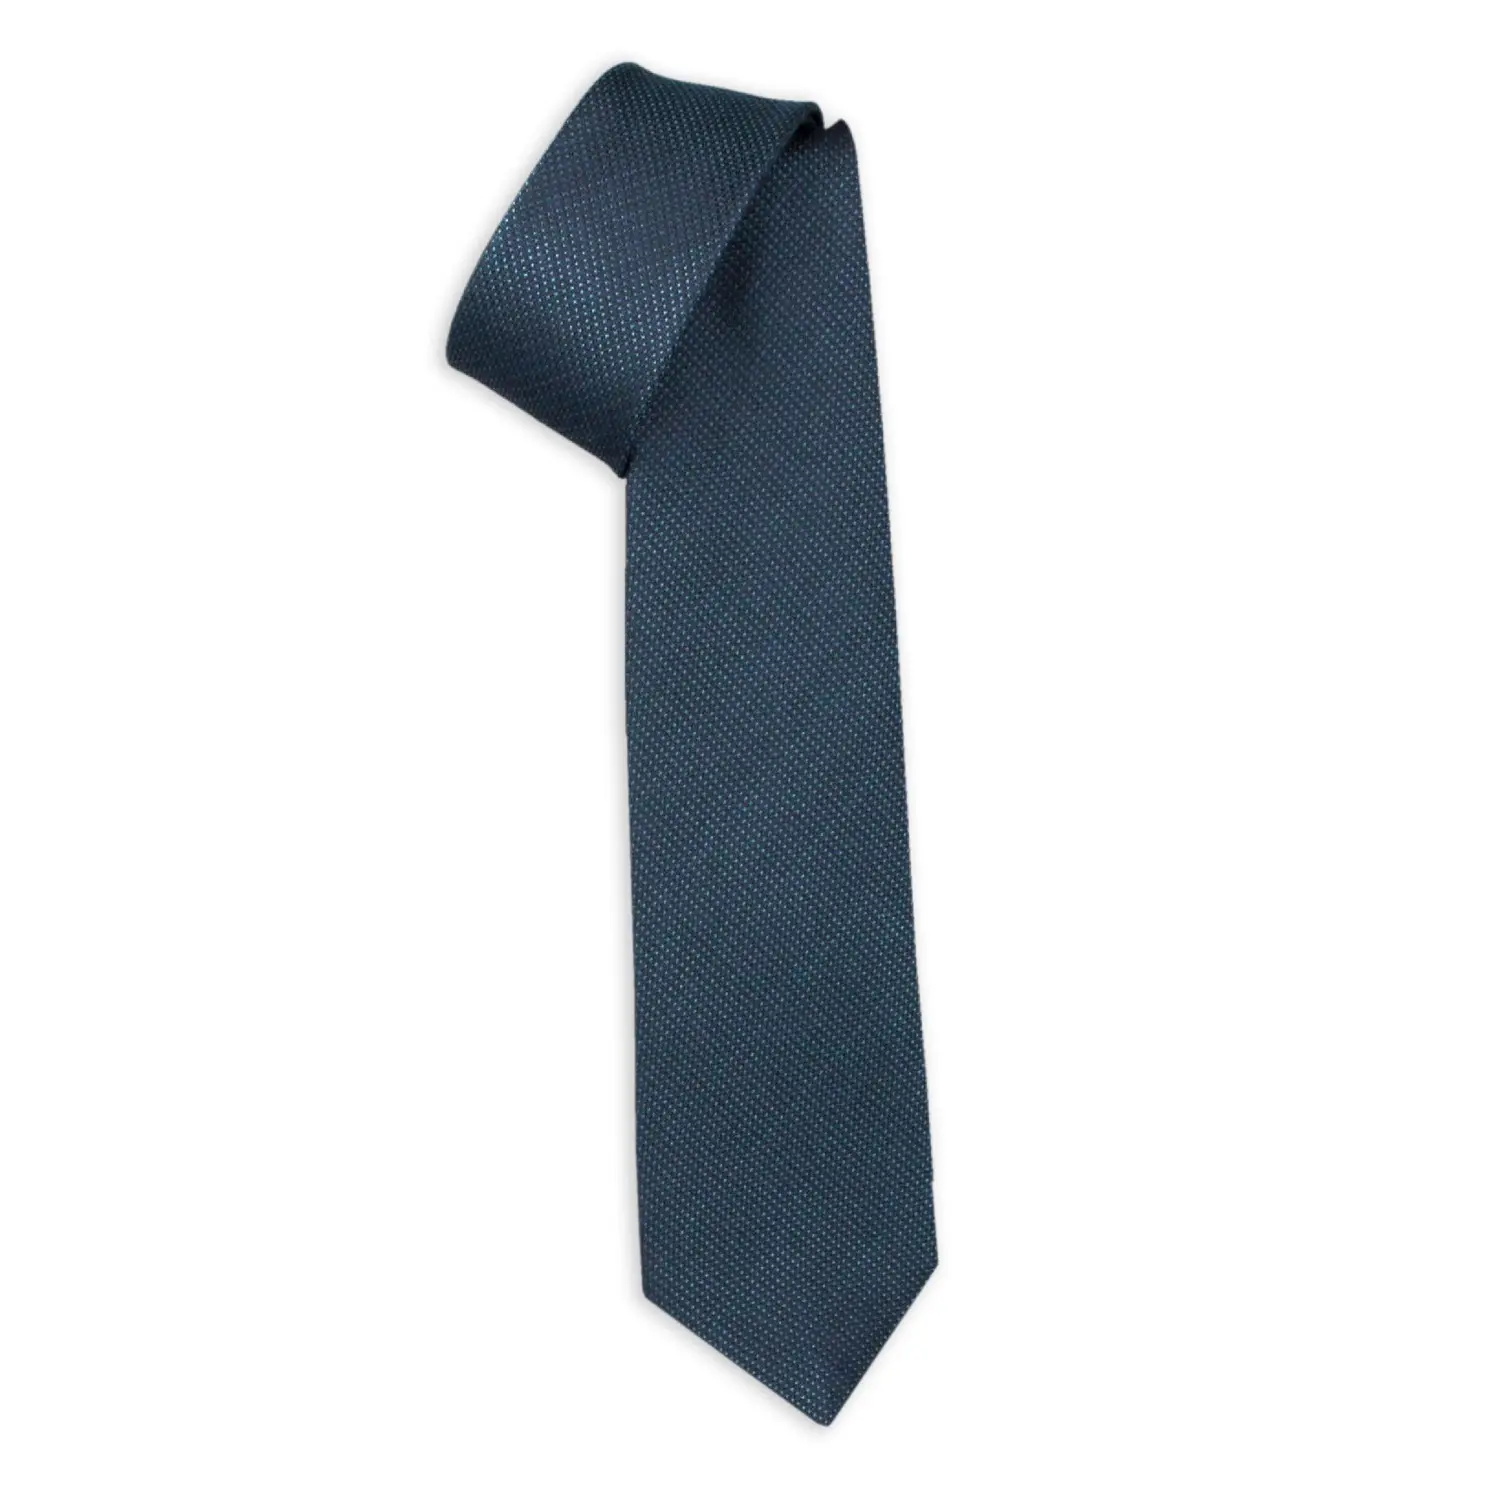 Made in Italy Italienische sieben fach gebundene Krawatten-100% Seide Jacquard Napoli Peacock Blue-Erhöhen Sie Ihre Präsenz